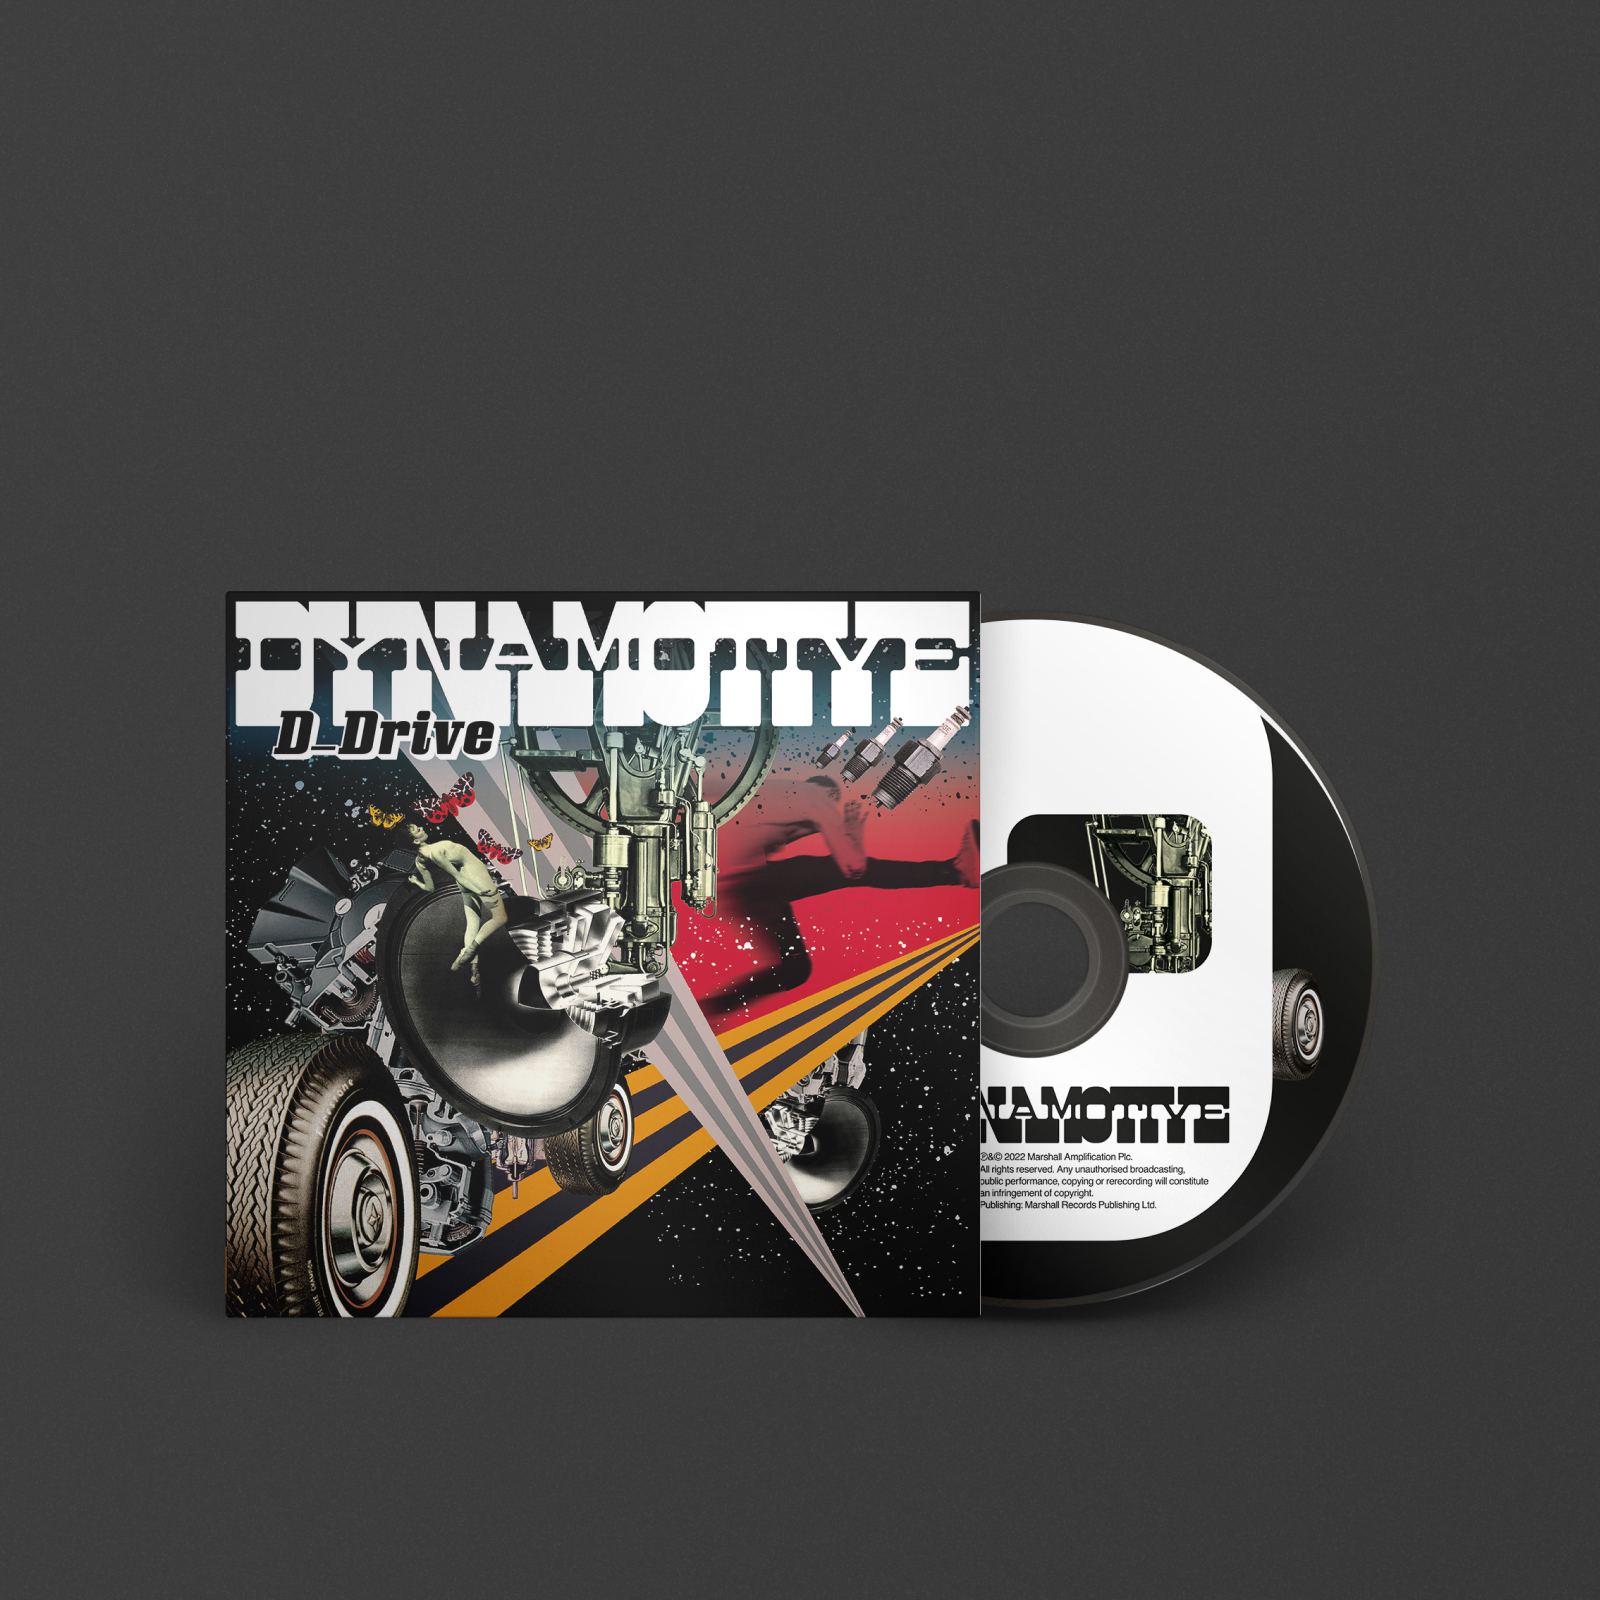 Un CD de DYNAMOTIVE par D_DRIVE présentant une image vibrante d'une moto, parfait pour les amateurs de musique.